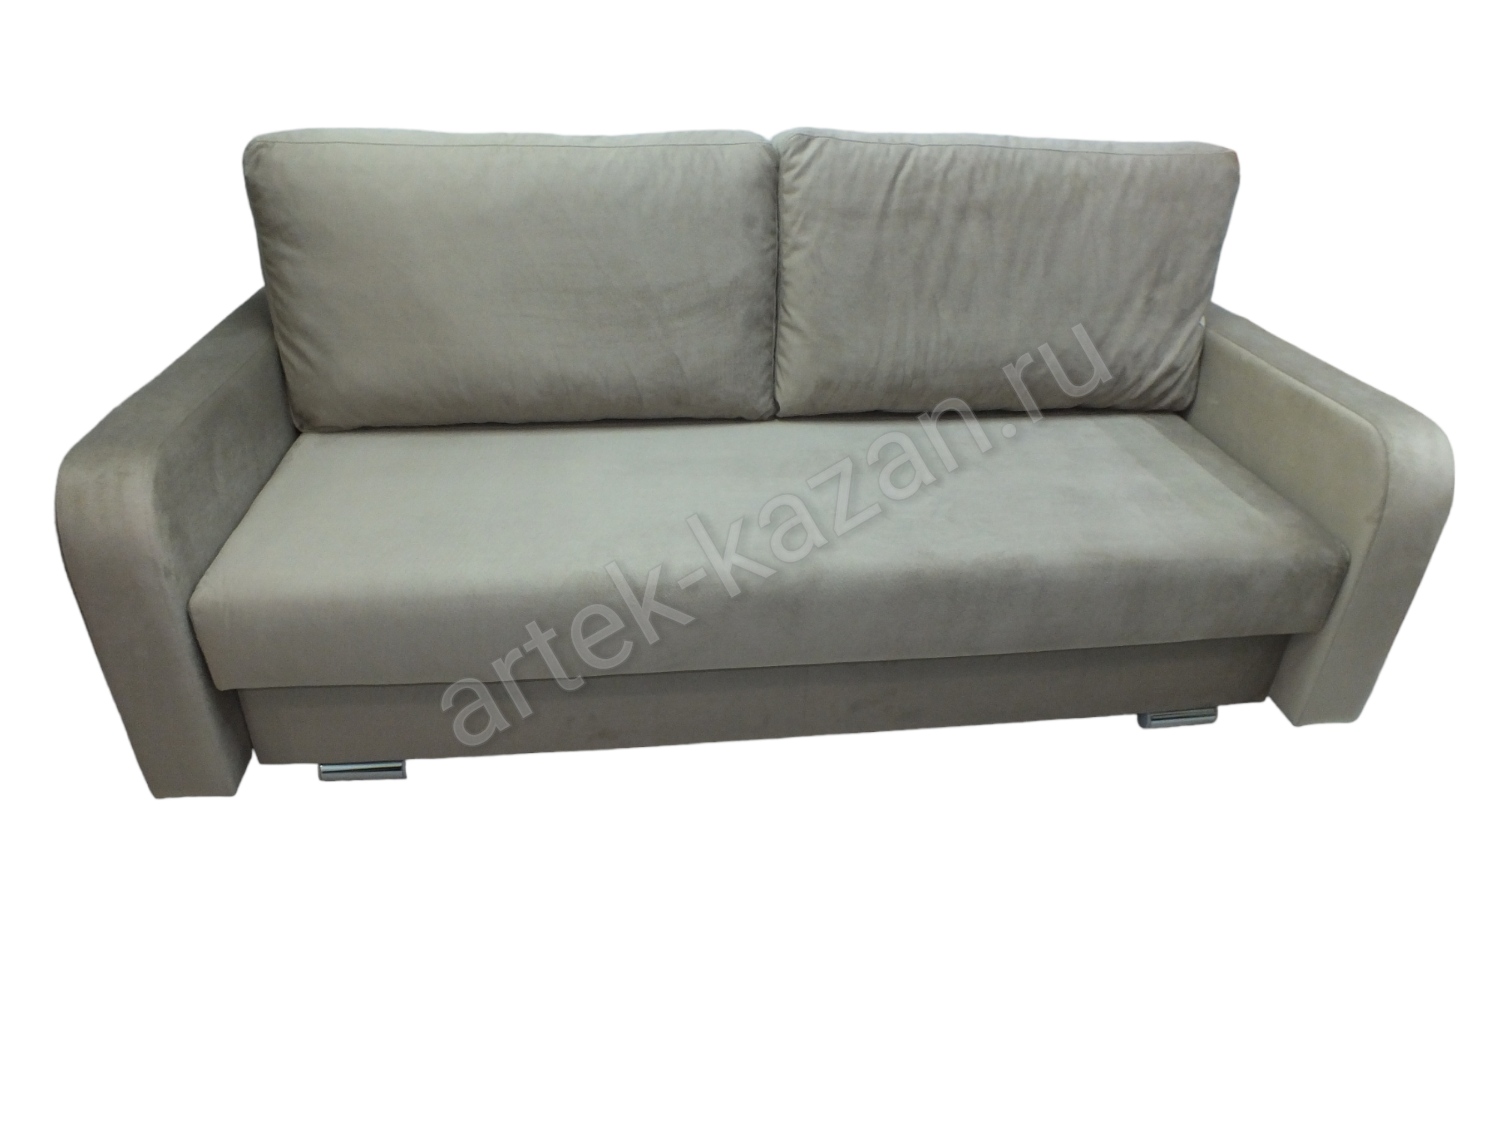 Фото 3. Купить недорогой диван по низкой цене от производителя можно у нас.